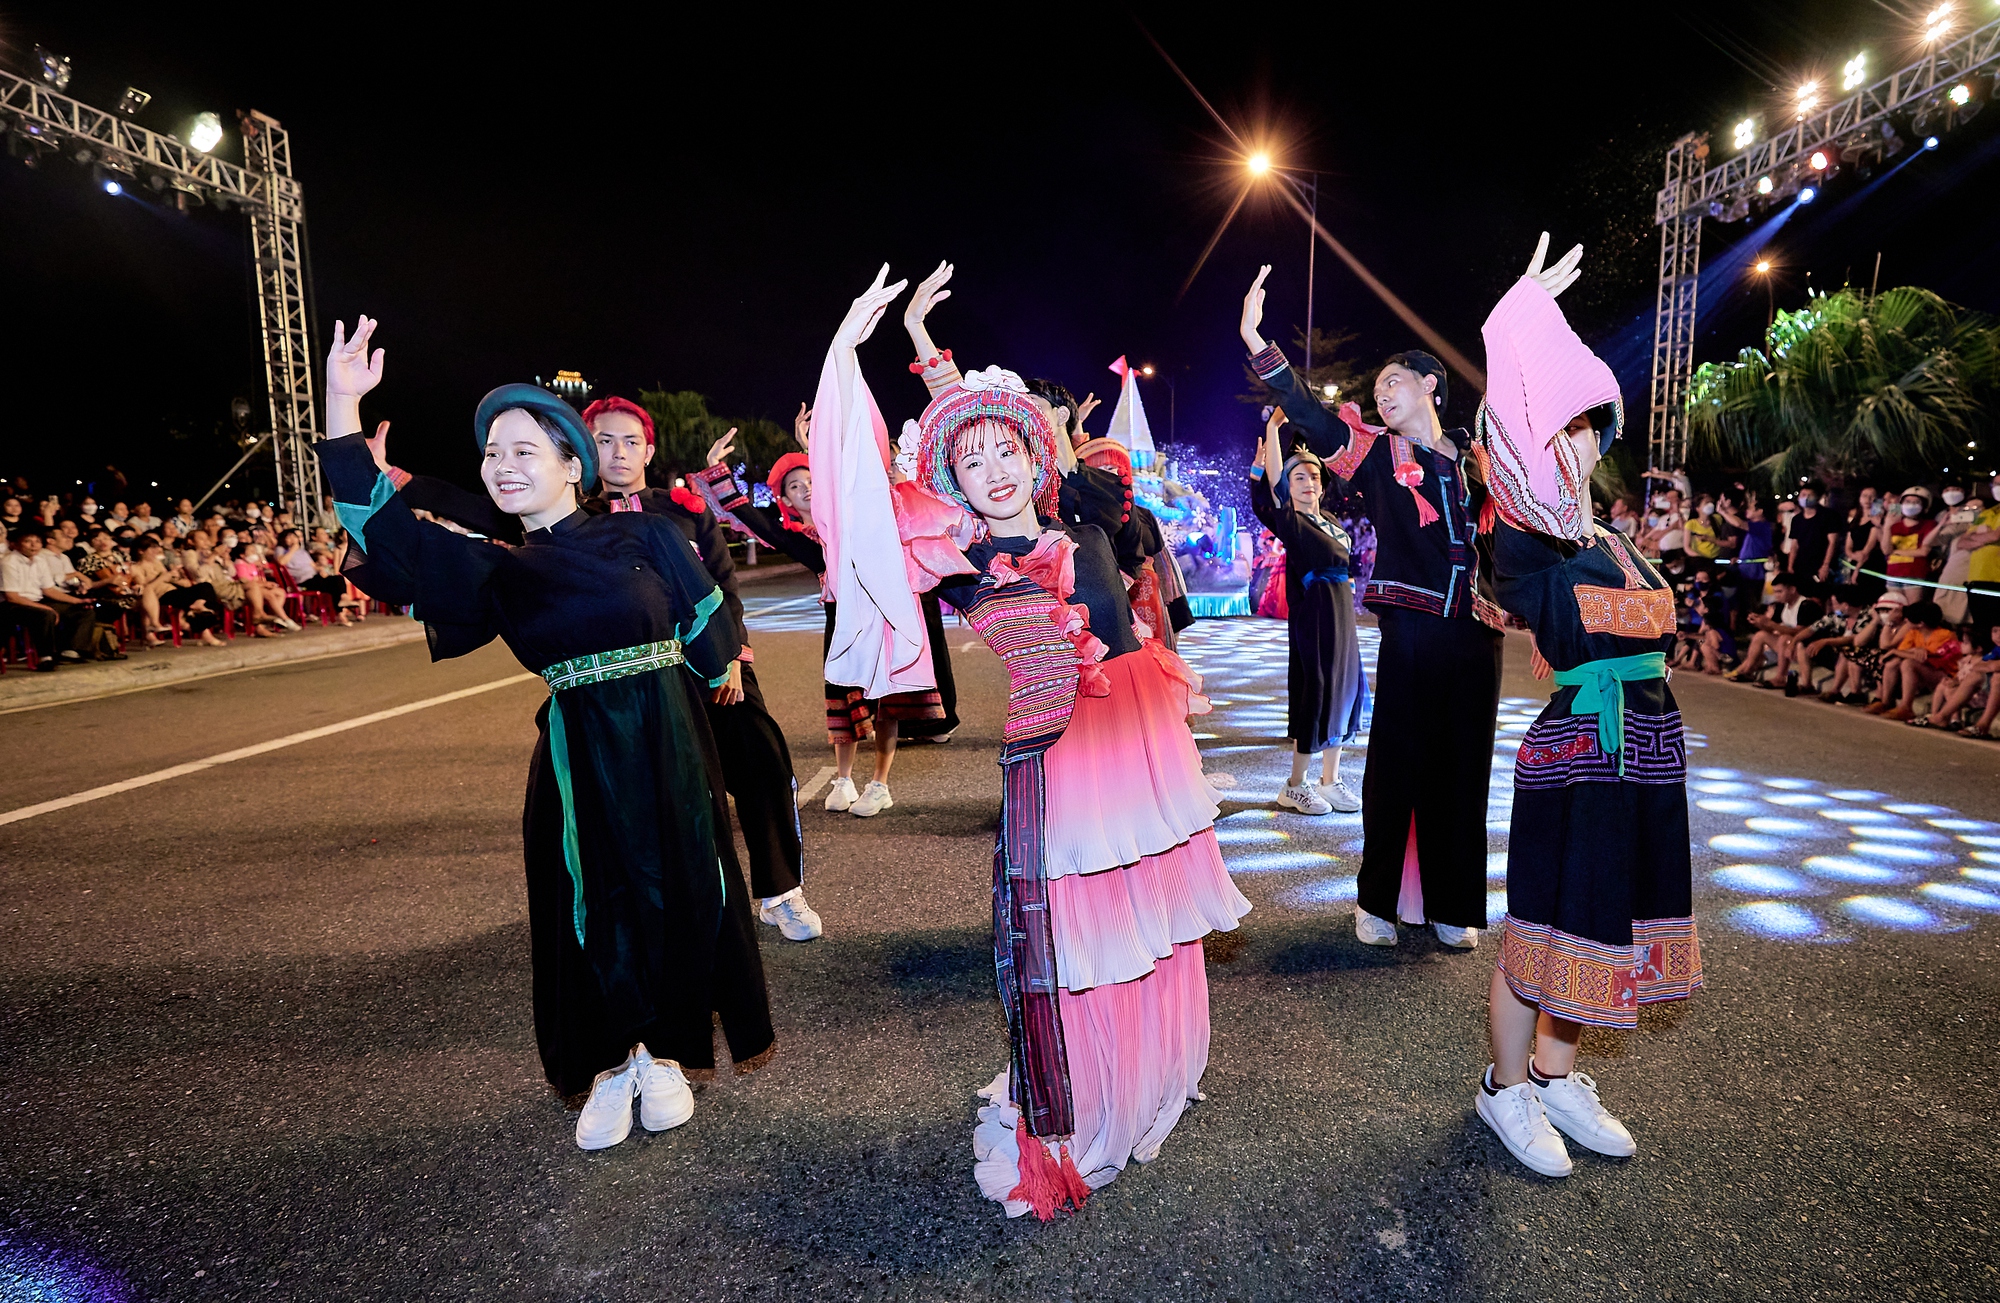 Đà Nẵng rực rỡ sắc màu với đêm lễ hội Carnival đường phố-5